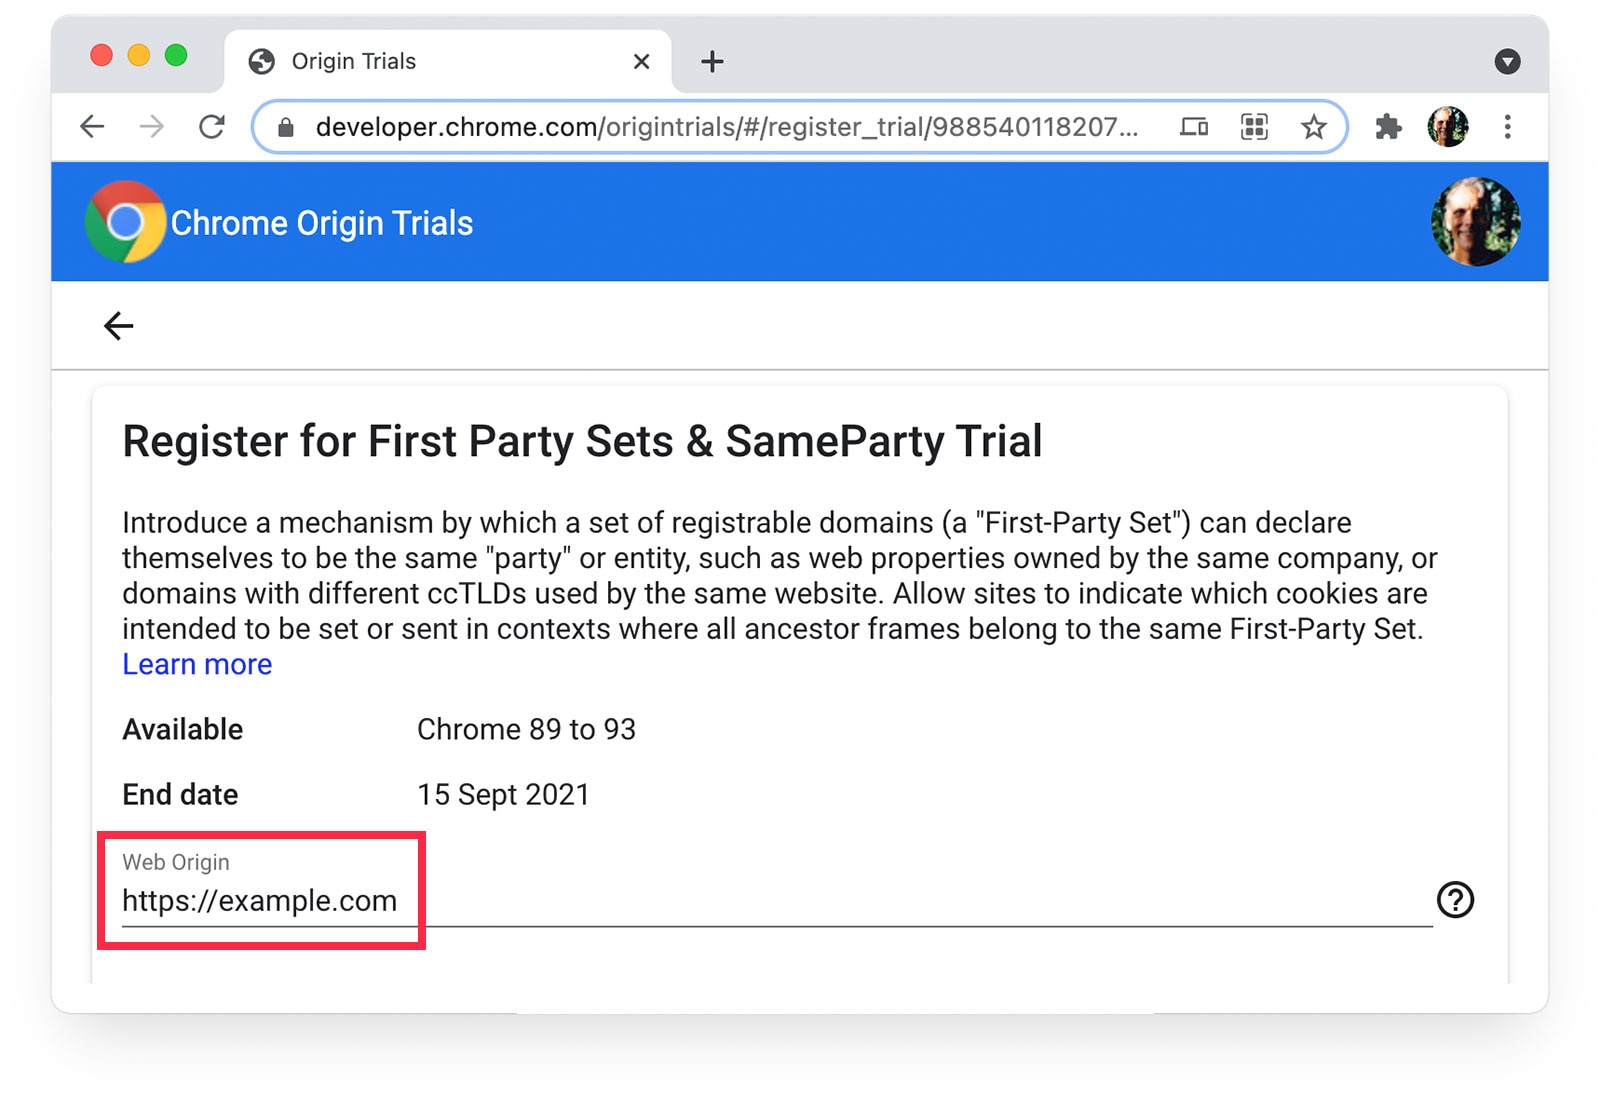 Strona z testami origin Chrome 
z adresem https://example.com wybranym jako źródło witryny.